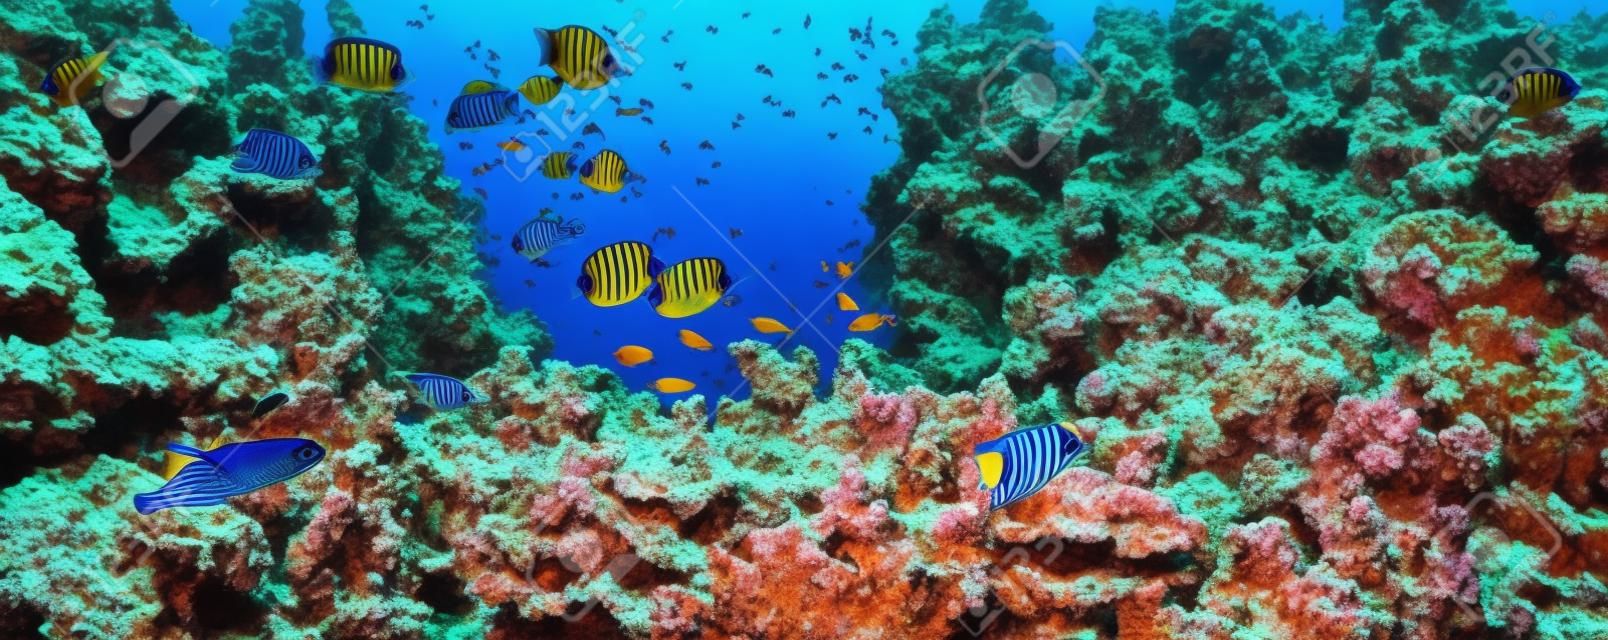 Vlindervissen in de natuurlijke omgeving. Onderwater kleurrijke vissen bij koraalrif op Rode Zee. Blauw water in Ras Muhammad National Park in Sinaï, Egypte